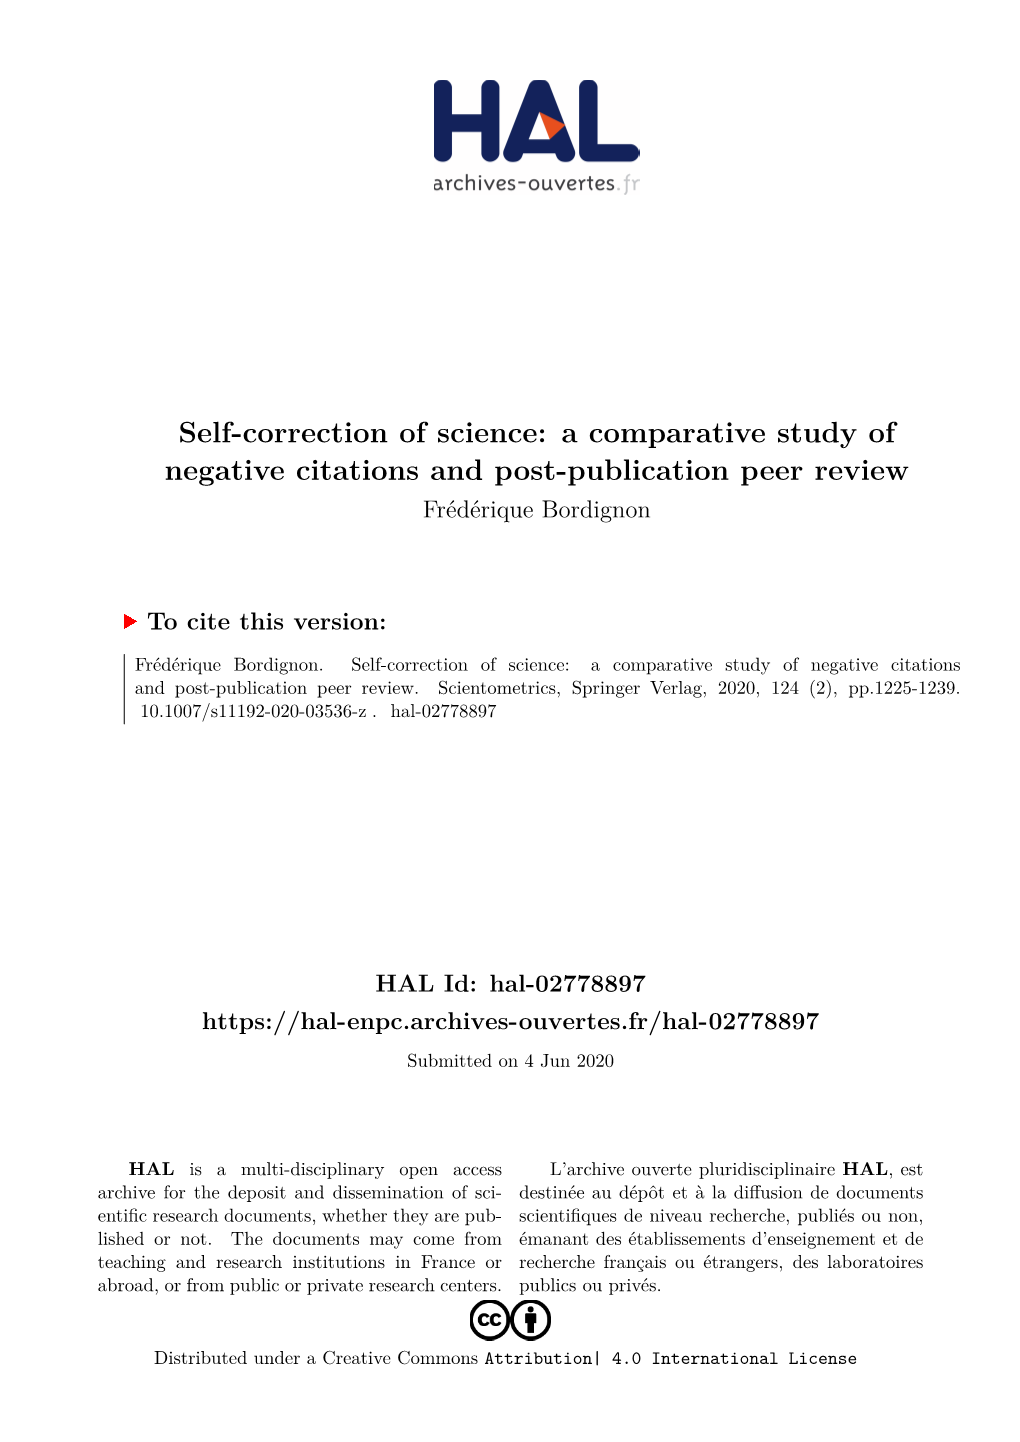 A Comparative Study of Negative Citations and Post-Publication Peer Review Frédérique Bordignon